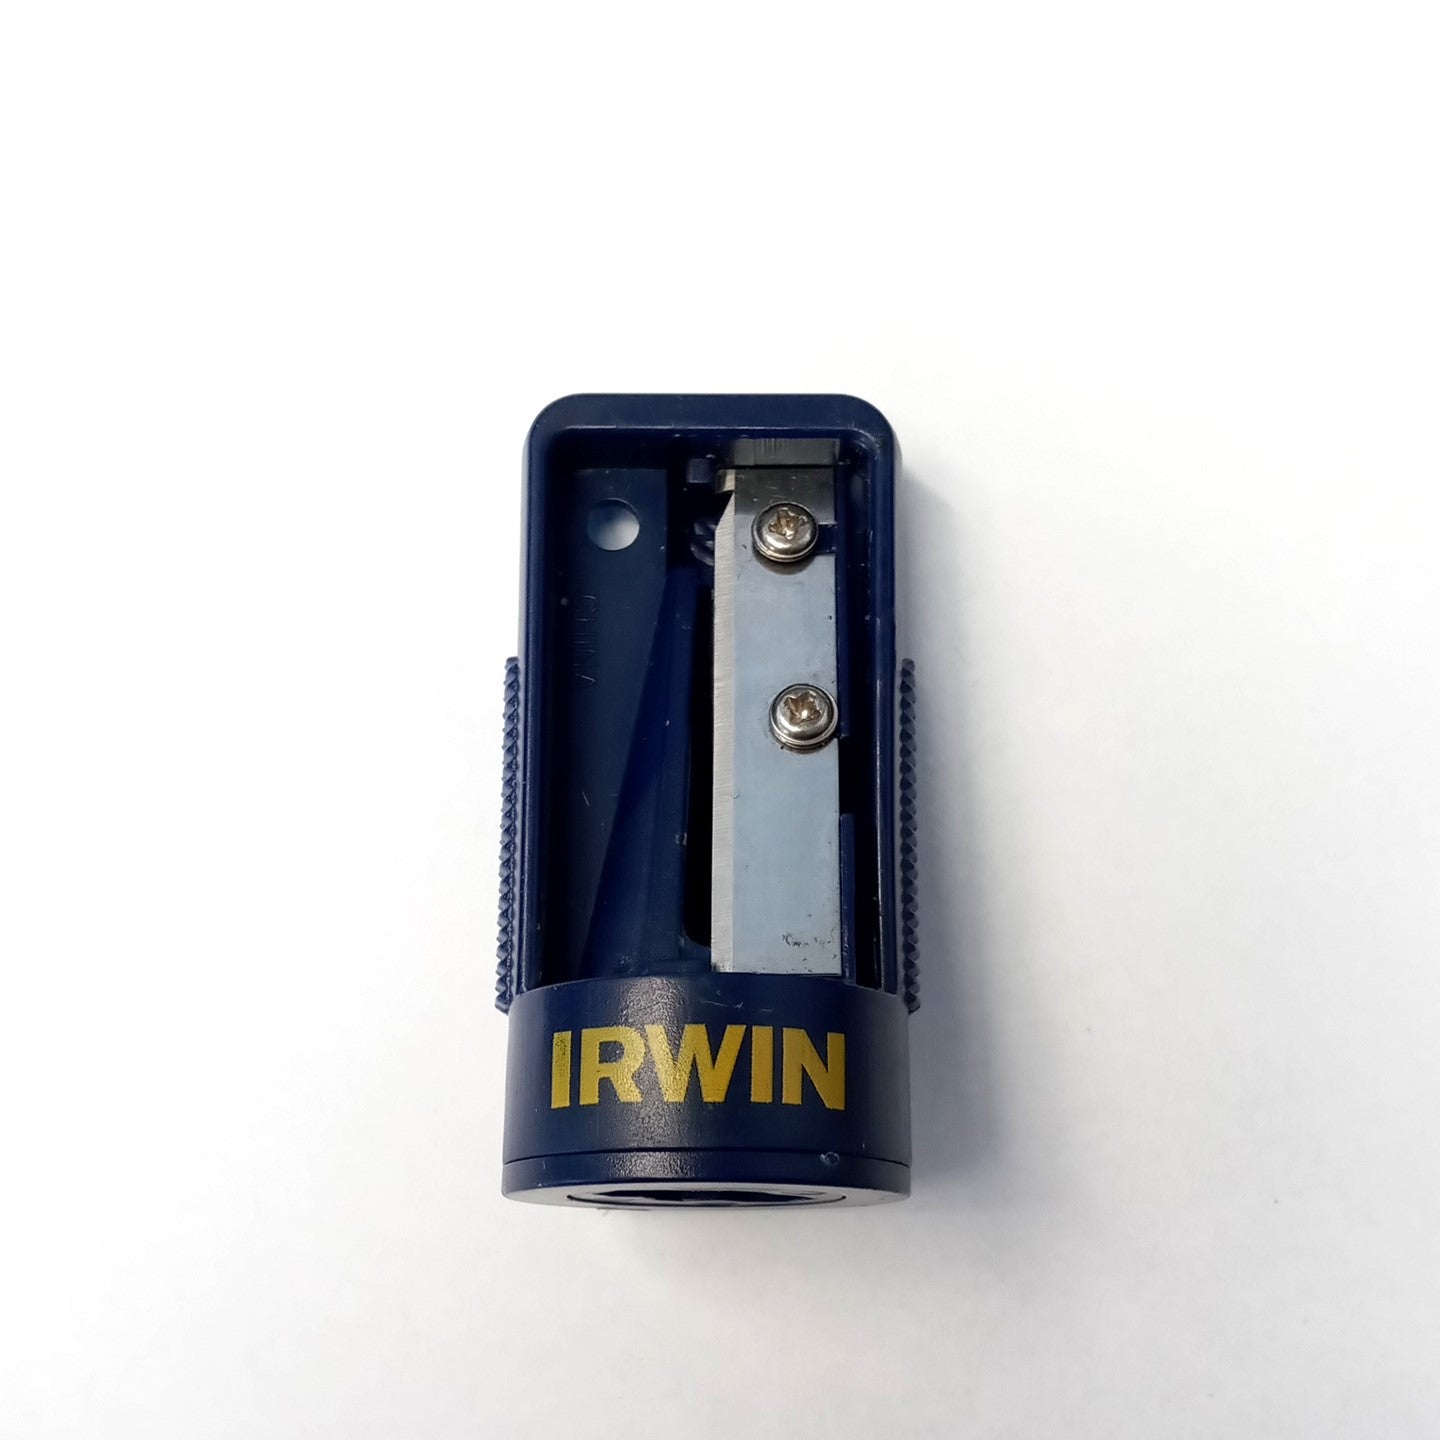 Irwin 00708 Carpenters Pencil Sharpener